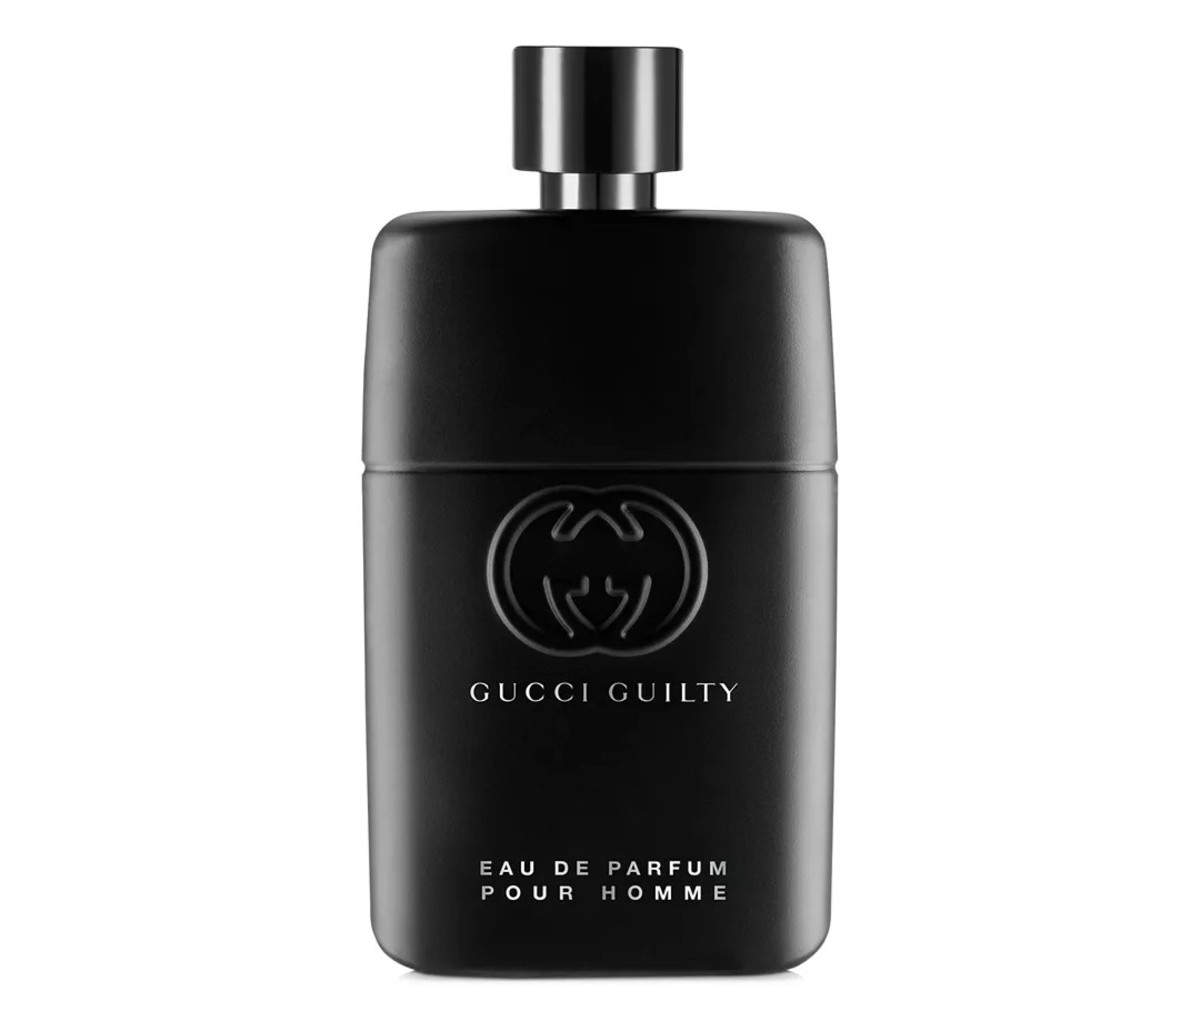 A bottle of Gucci Guilty Pour Homme Eau de Parfum.